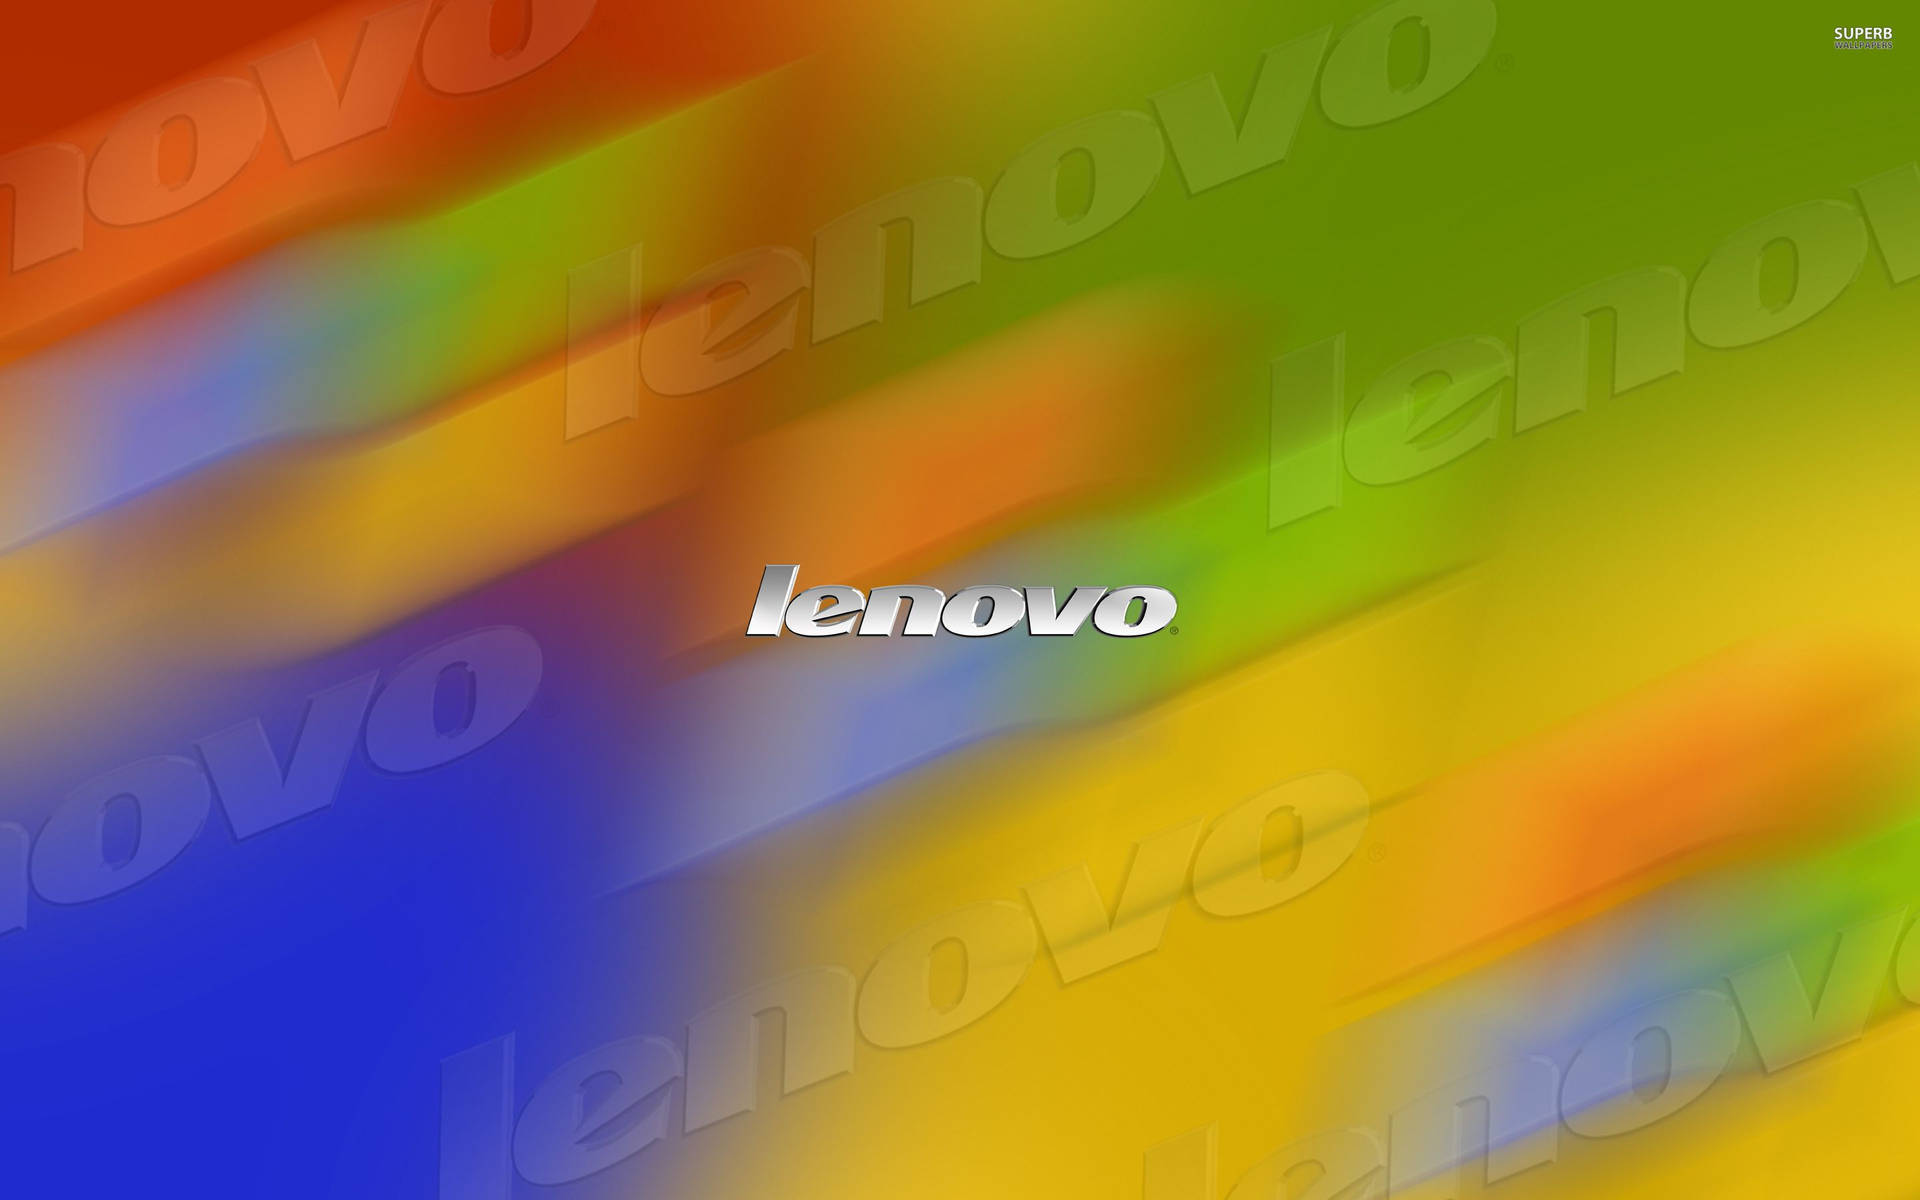 Suddigfärgstark Lenovo Officiell Wallpaper